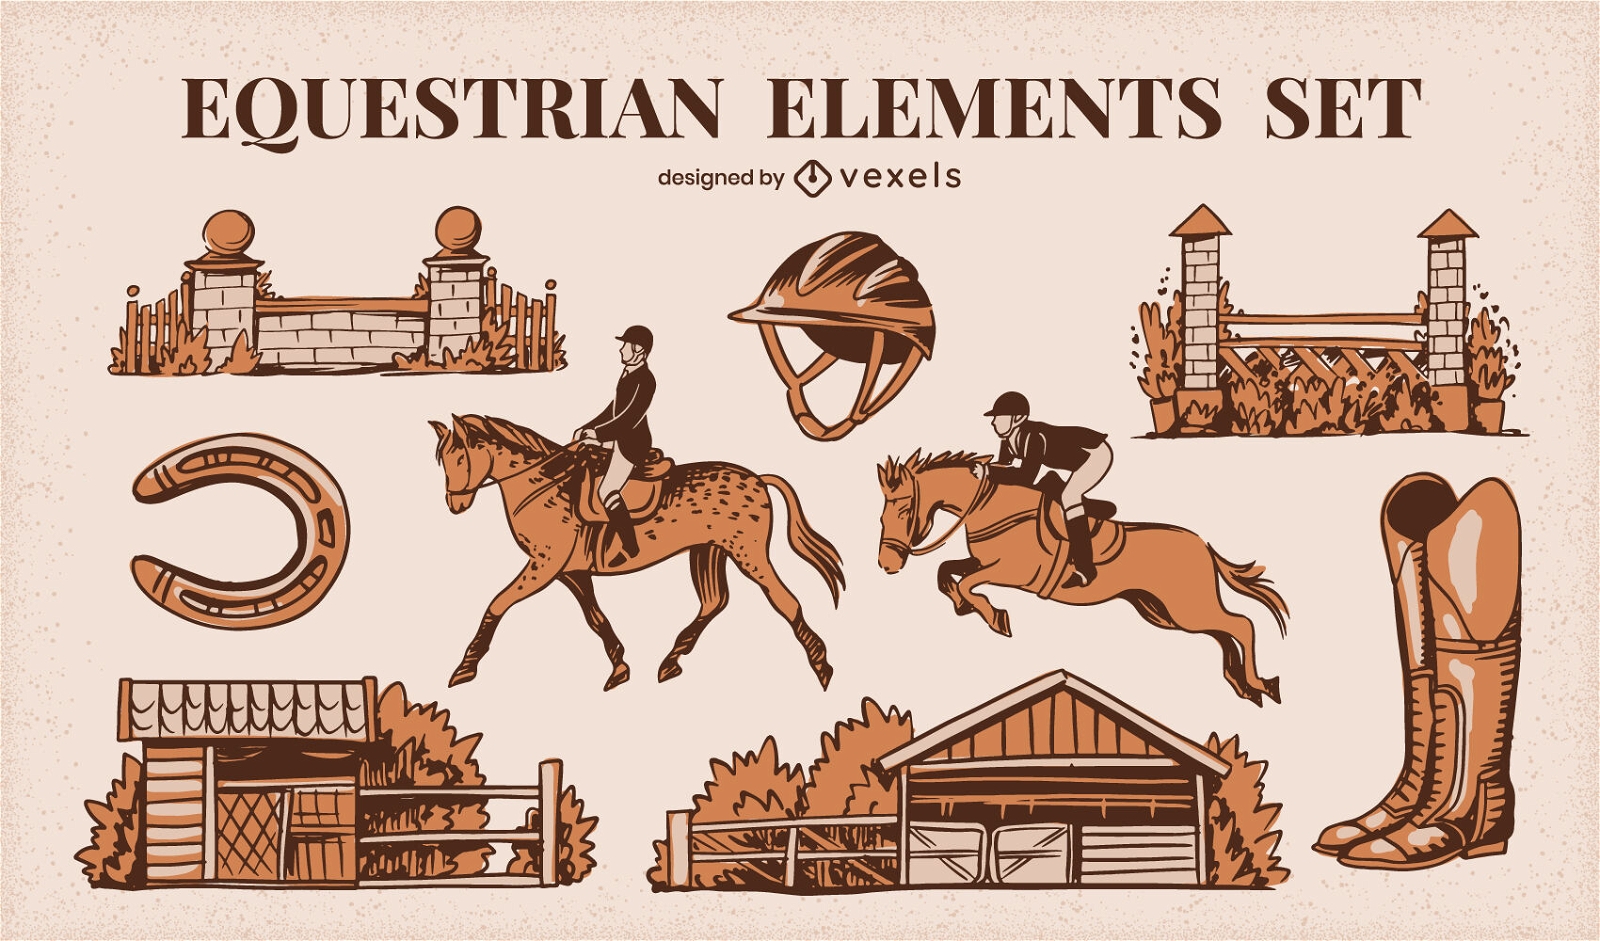 Equestrian elements set